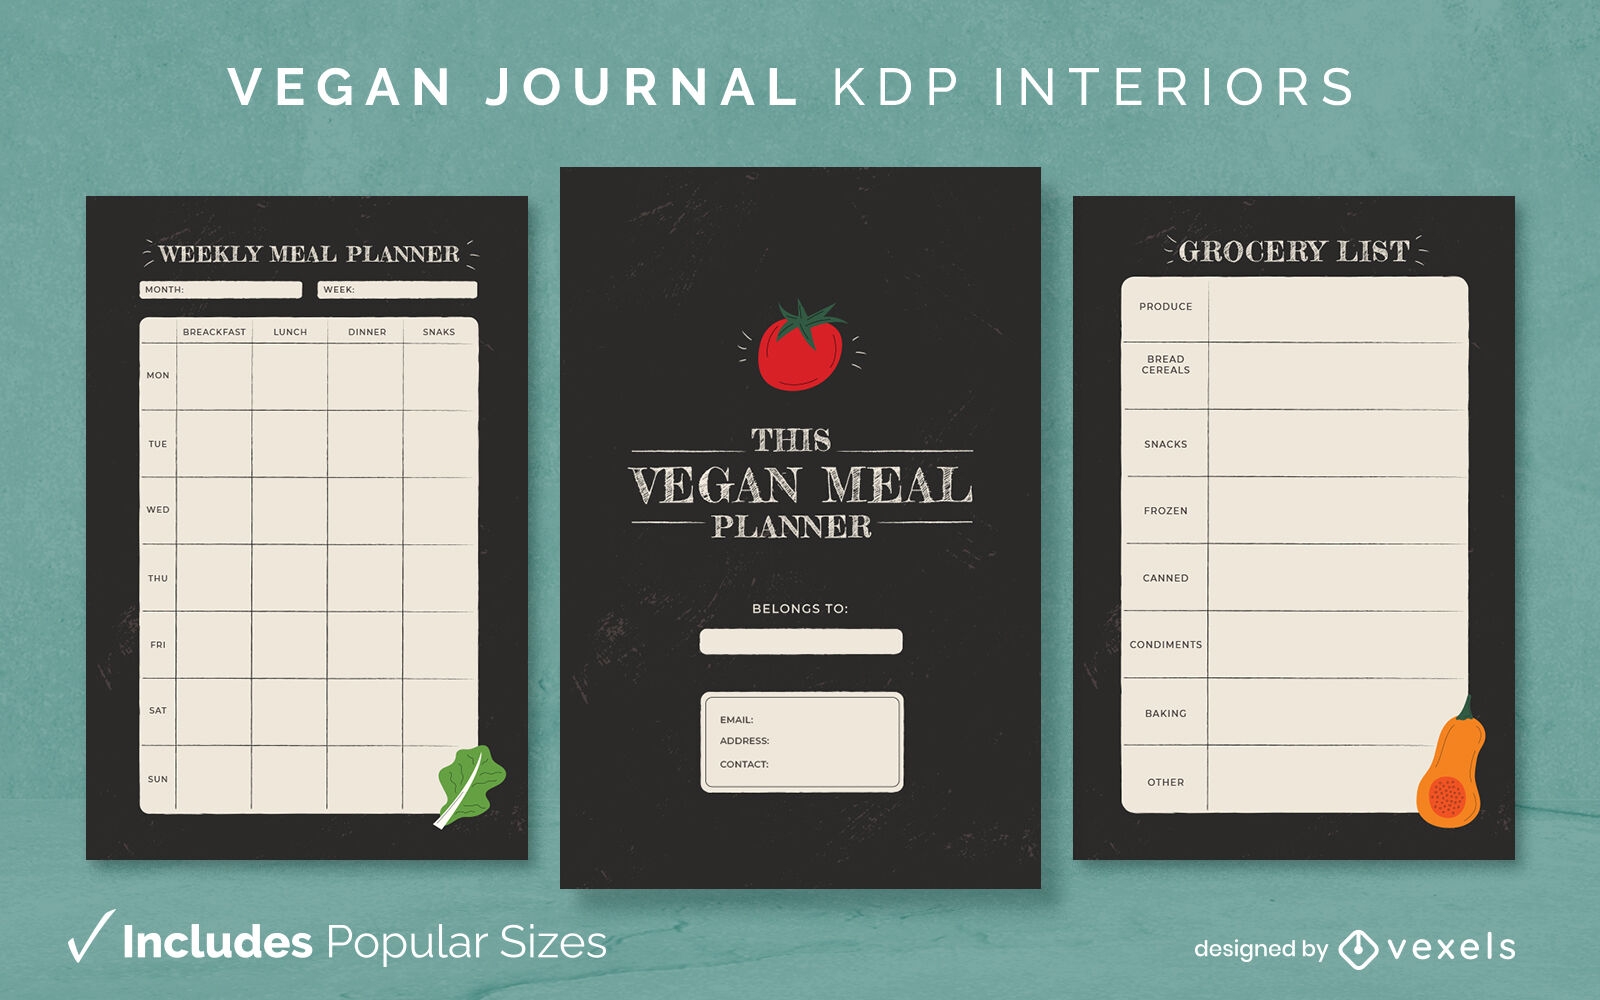 Vegan meal planner diary design template KDP